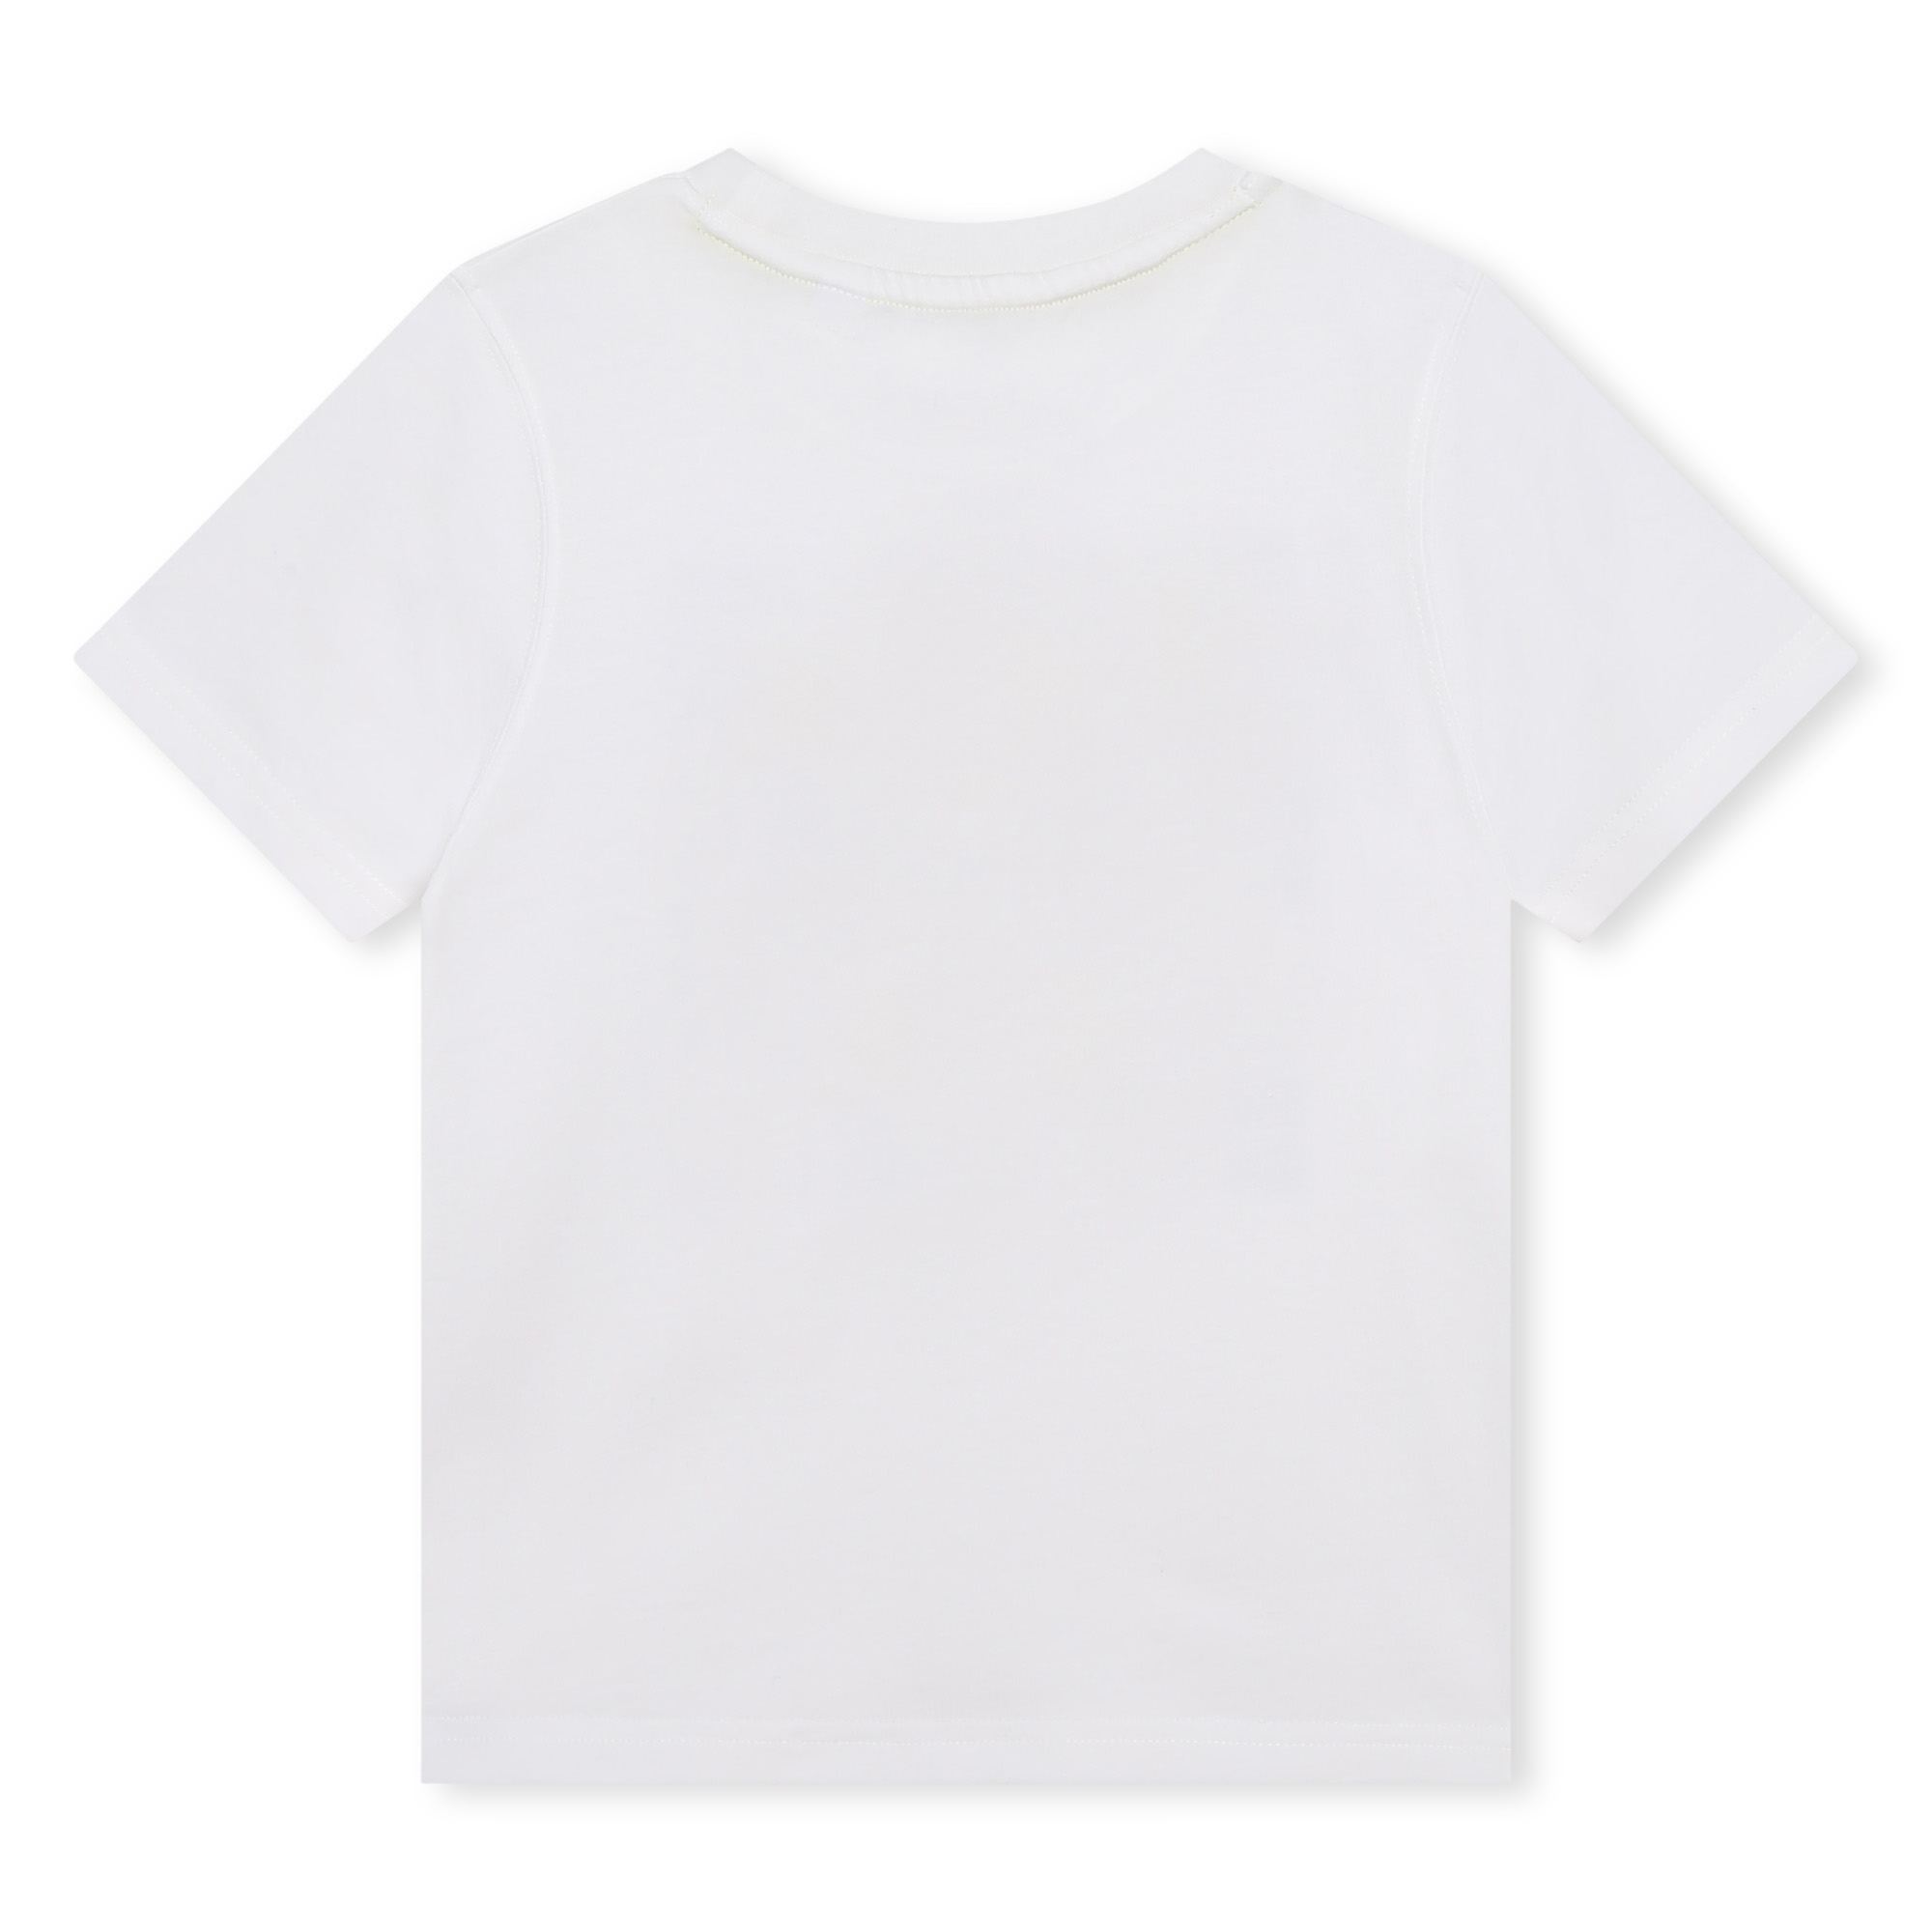 T-shirt avec imprimé logo TIMBERLAND pour GARCON